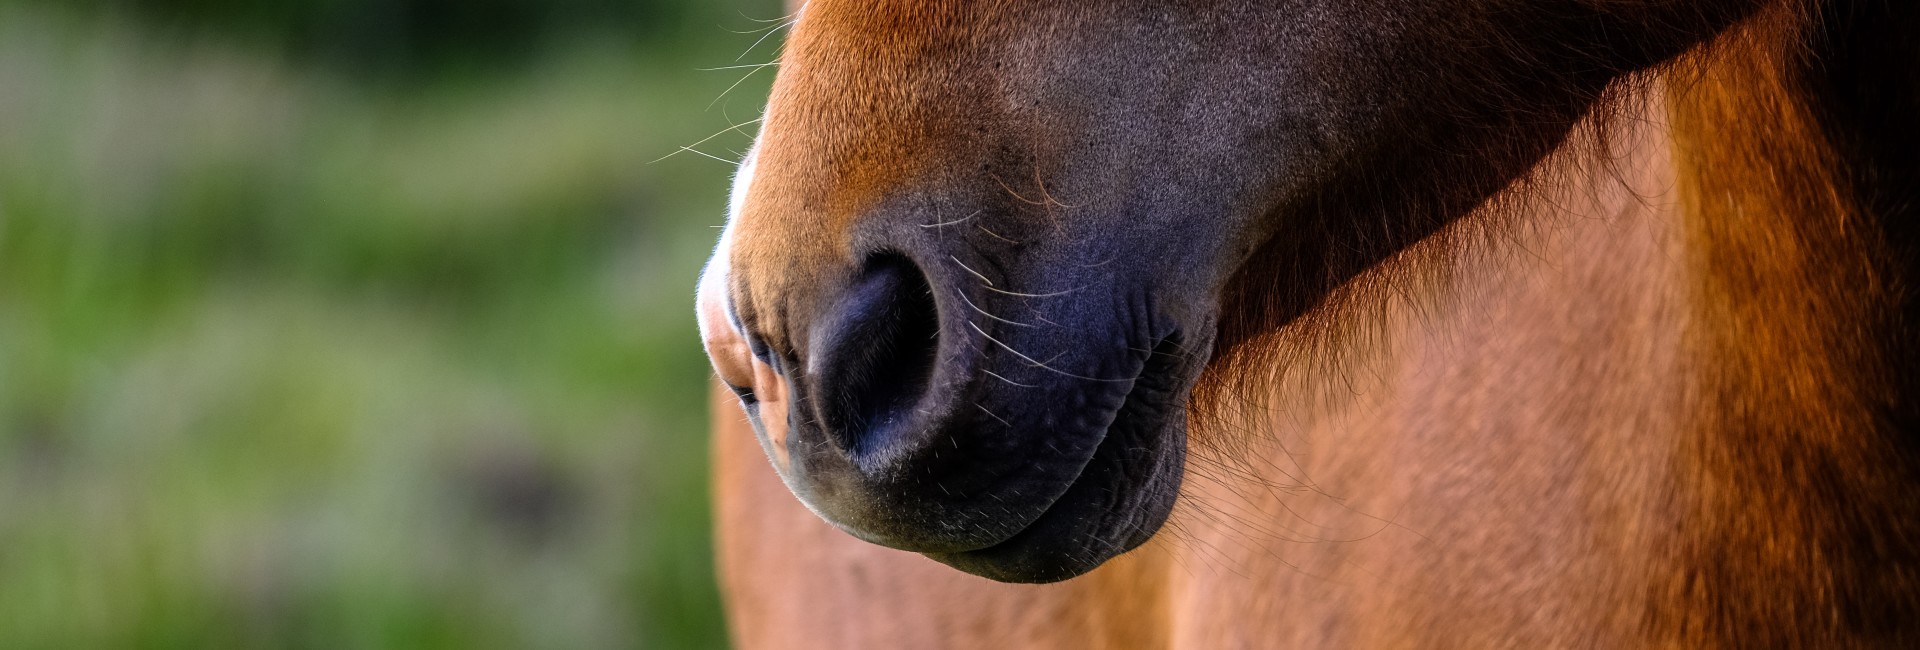 Foto van de neus van een bruin paard